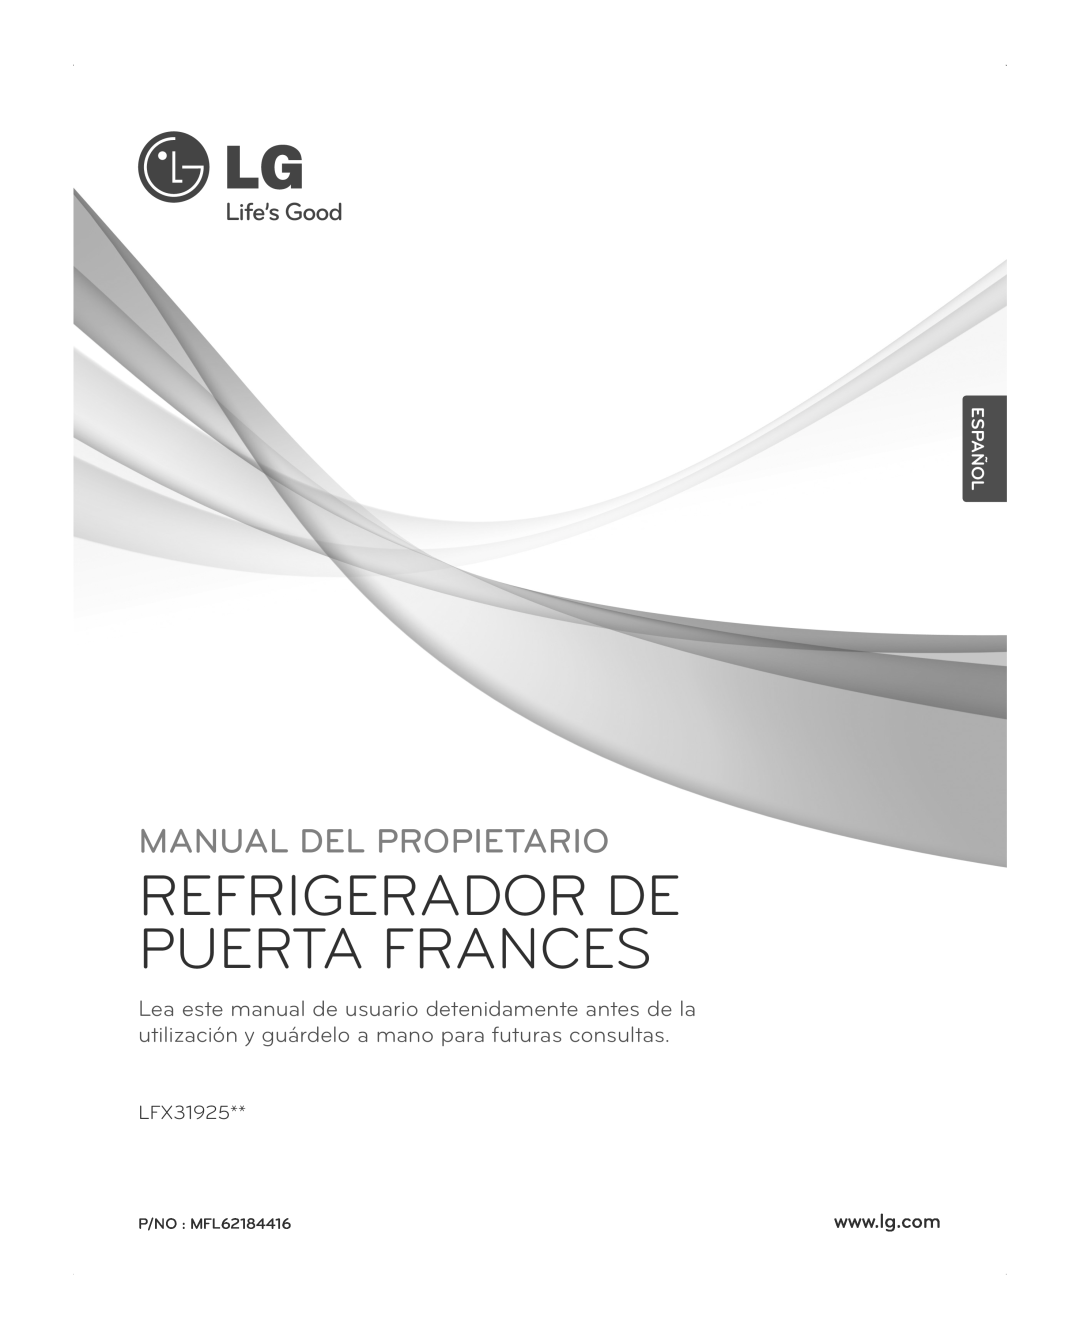 LG Electronics LFX31945ST Español, Refrigerador De Puerta Frances, Manual Del Propietario, LFX31925, P/NO MFL62184416 